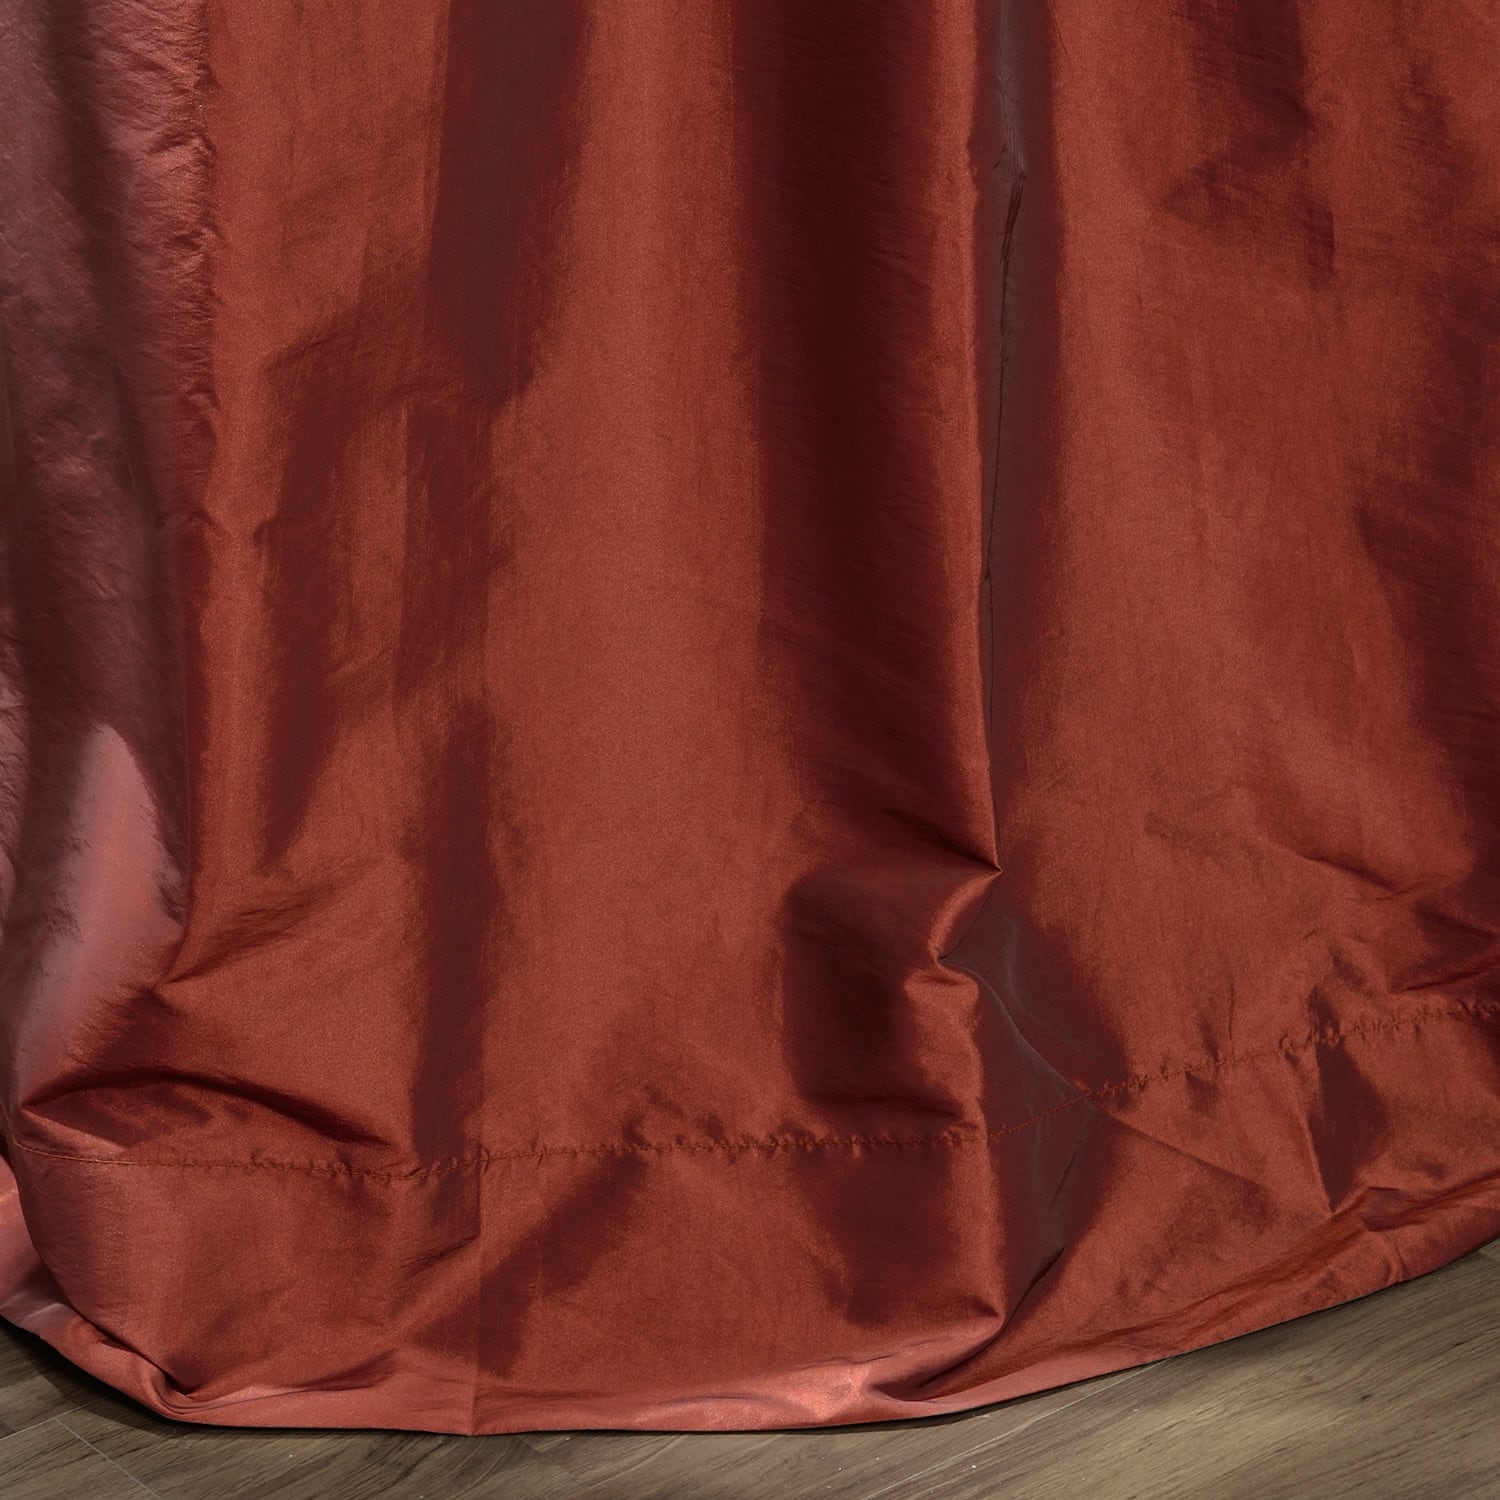 6896719 WIDE TAFFETA CAPRI RED Solid Color Drapery Fabric